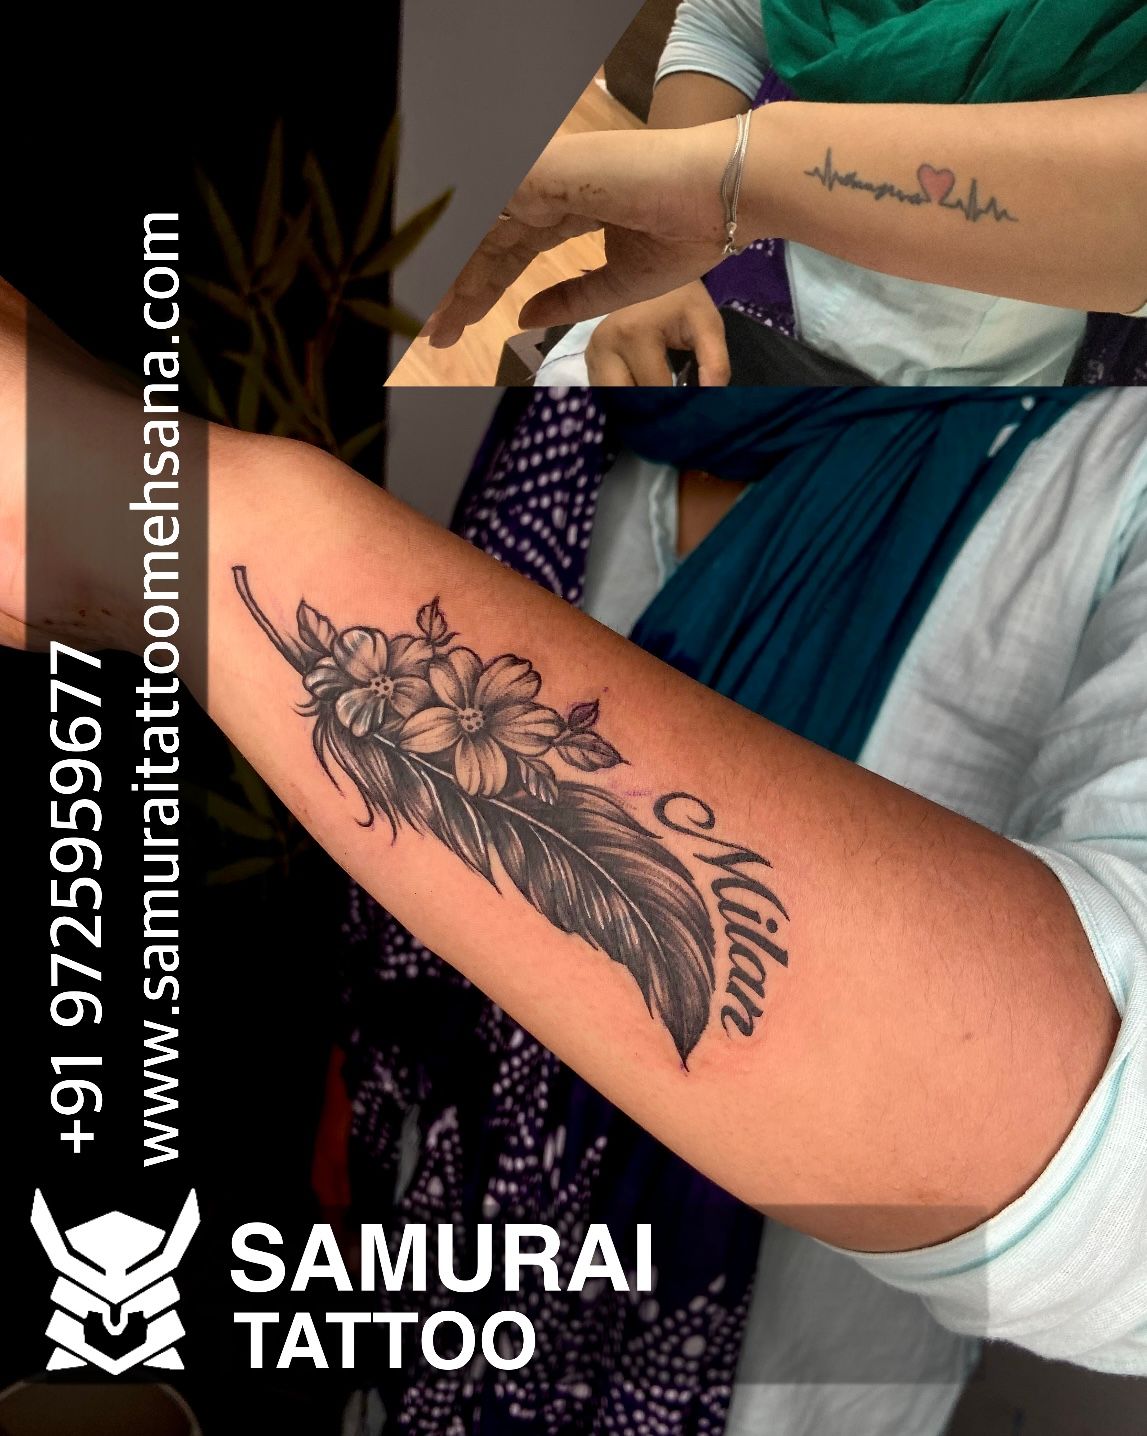 Tattoobaba on Twitter Feather tattoo on hand  feathertattoo feather  tattoobaba tattooed inked jaipur tattoosforwomen tattooinindia  tattooinjaipur instaartist workhard jaipur tattooartist artist  tattooshopinjaipur studio artstudio 